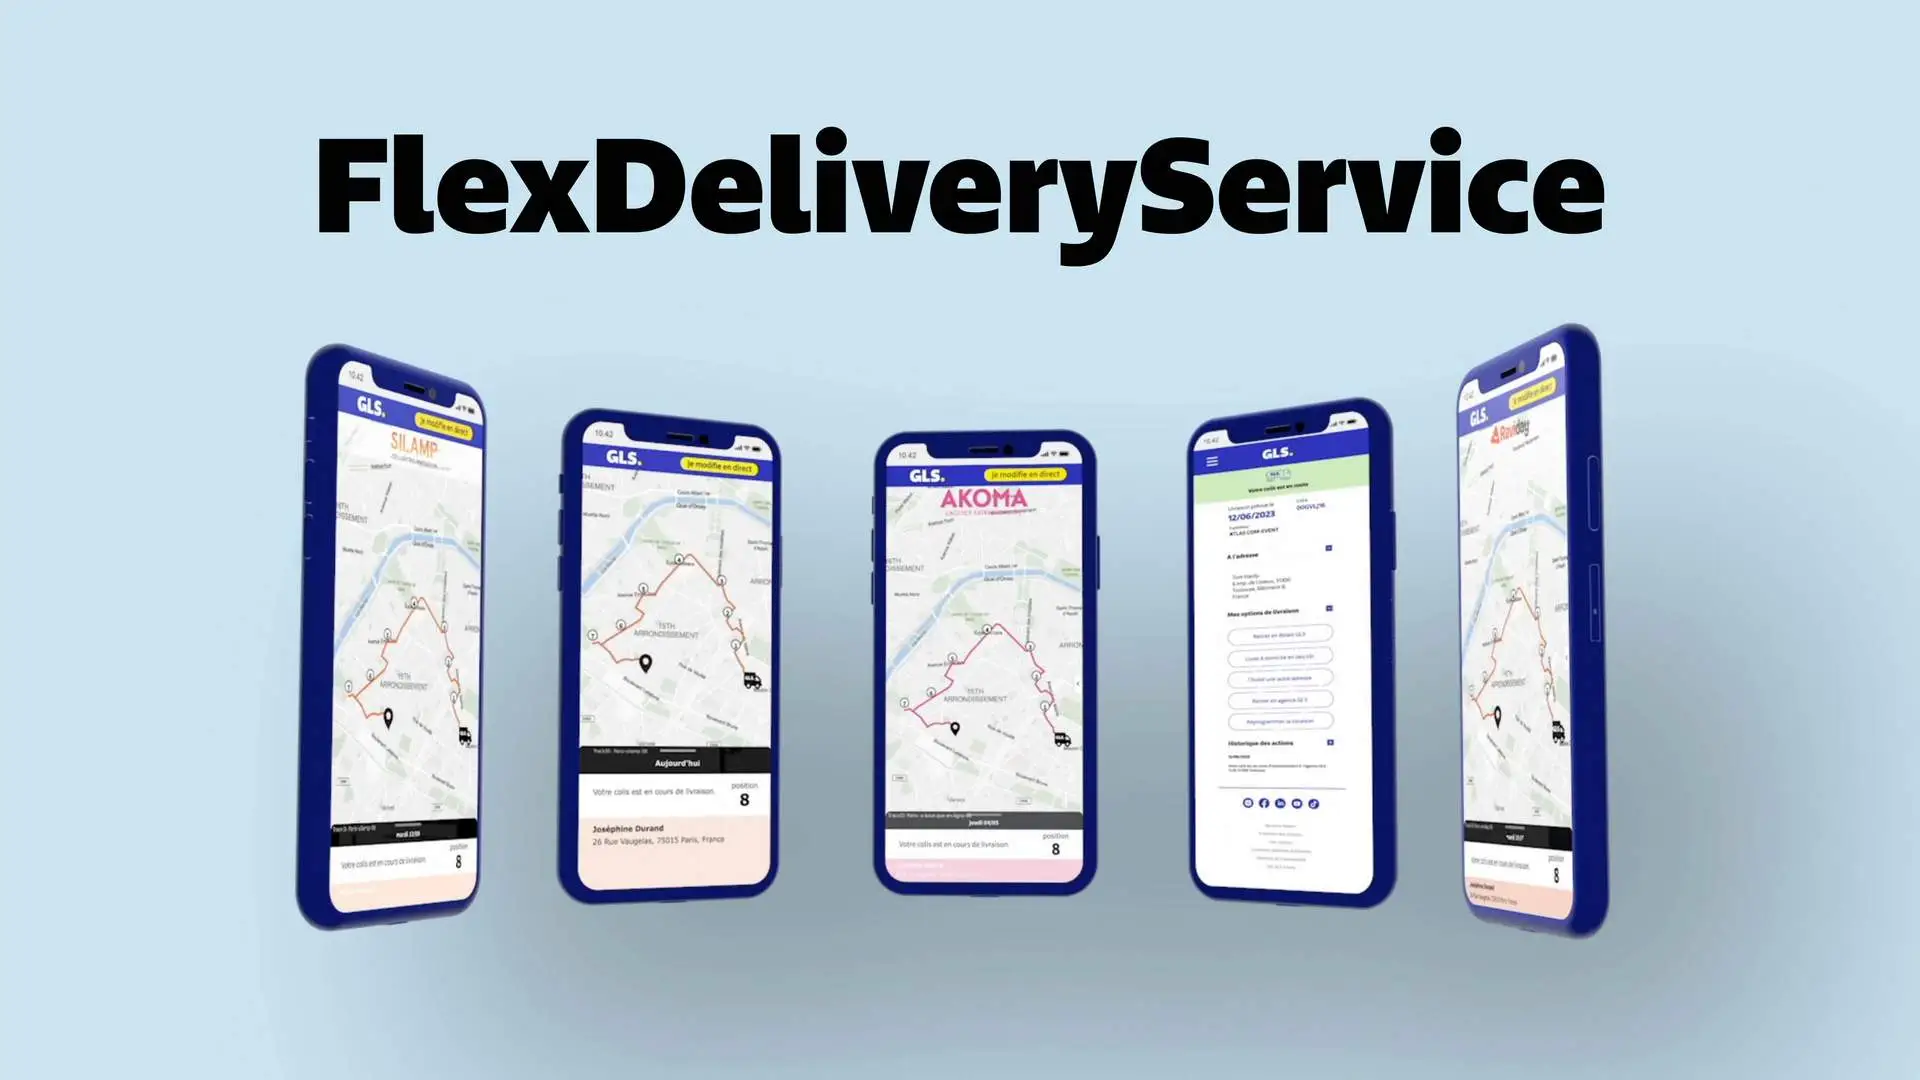 GLS réinvente la livraison à domicile avec le FlexDeliveryService